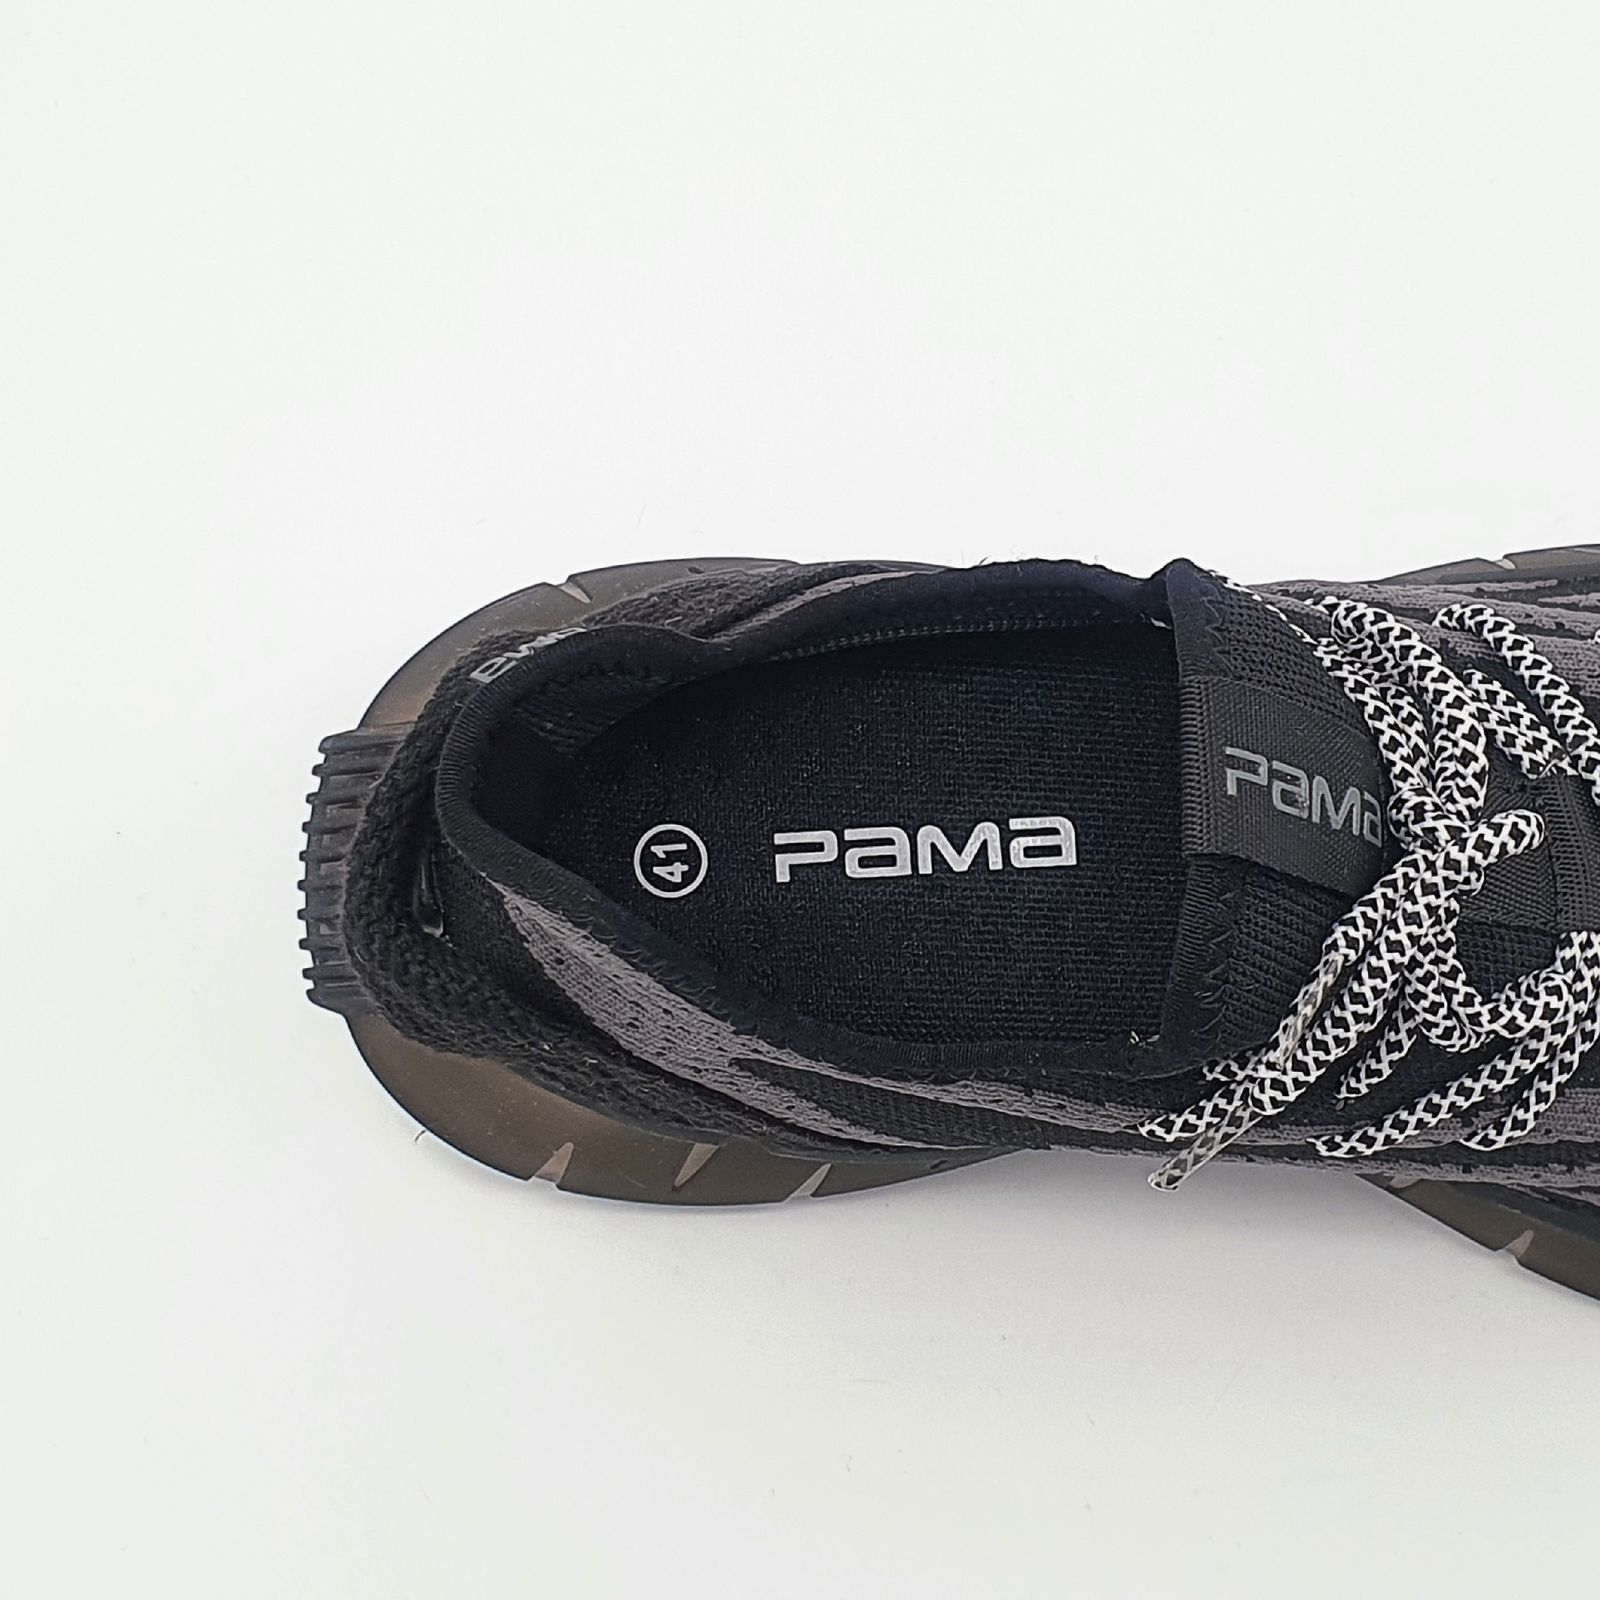 کفش پیاده روی مردانه پاما مدل VR-821 کد G1591 -  - 6